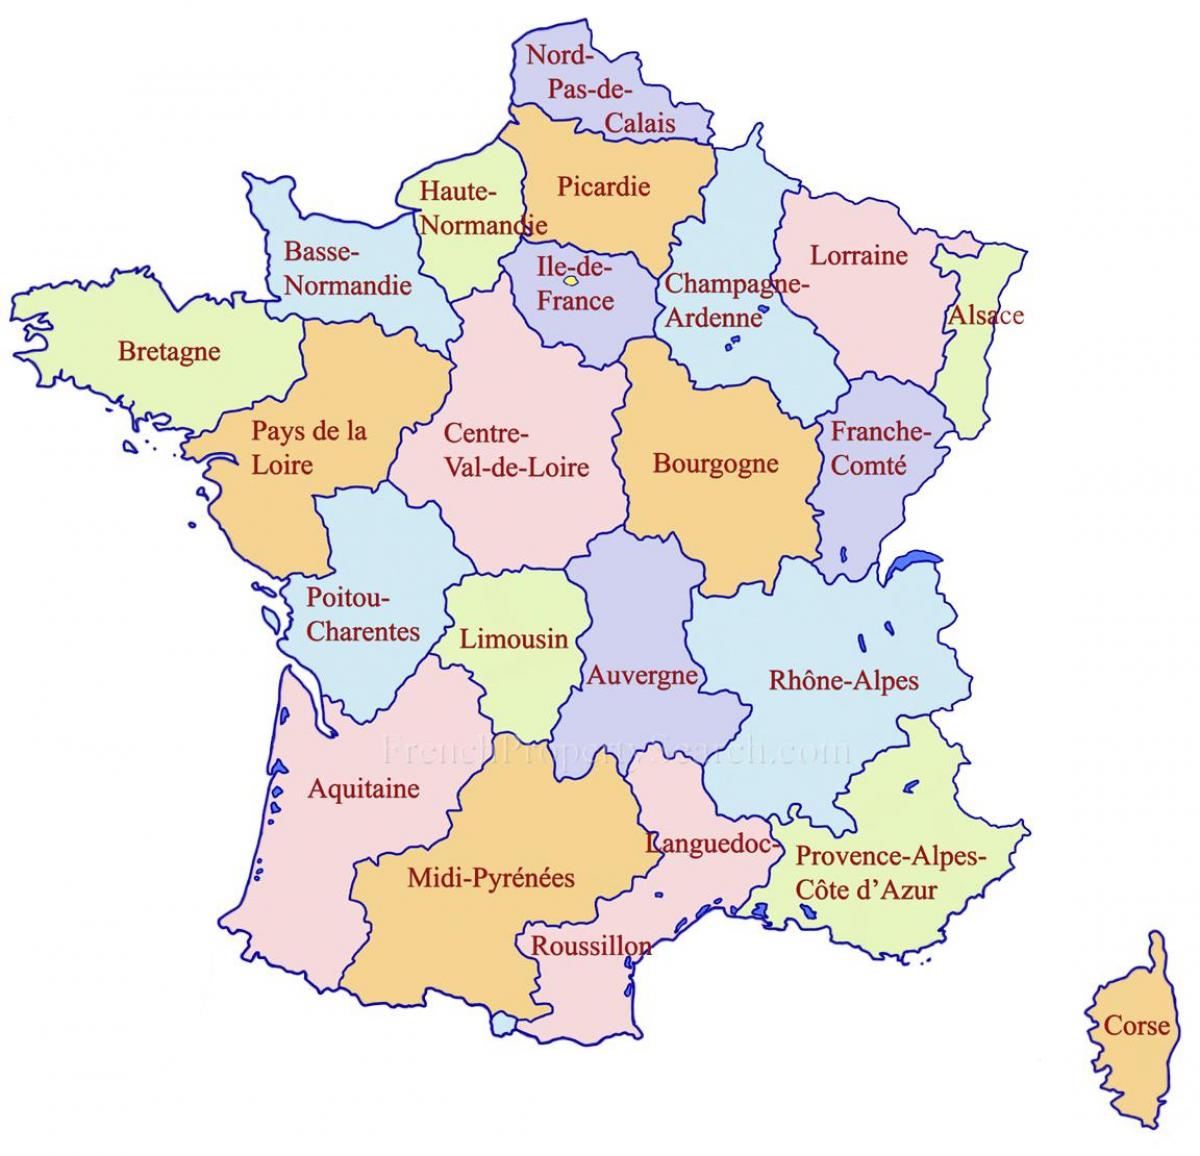 ranskan alueet kartta Google map Ranska   alueiden Yksityiskohtainen kartta Ranskan  ranskan alueet kartta